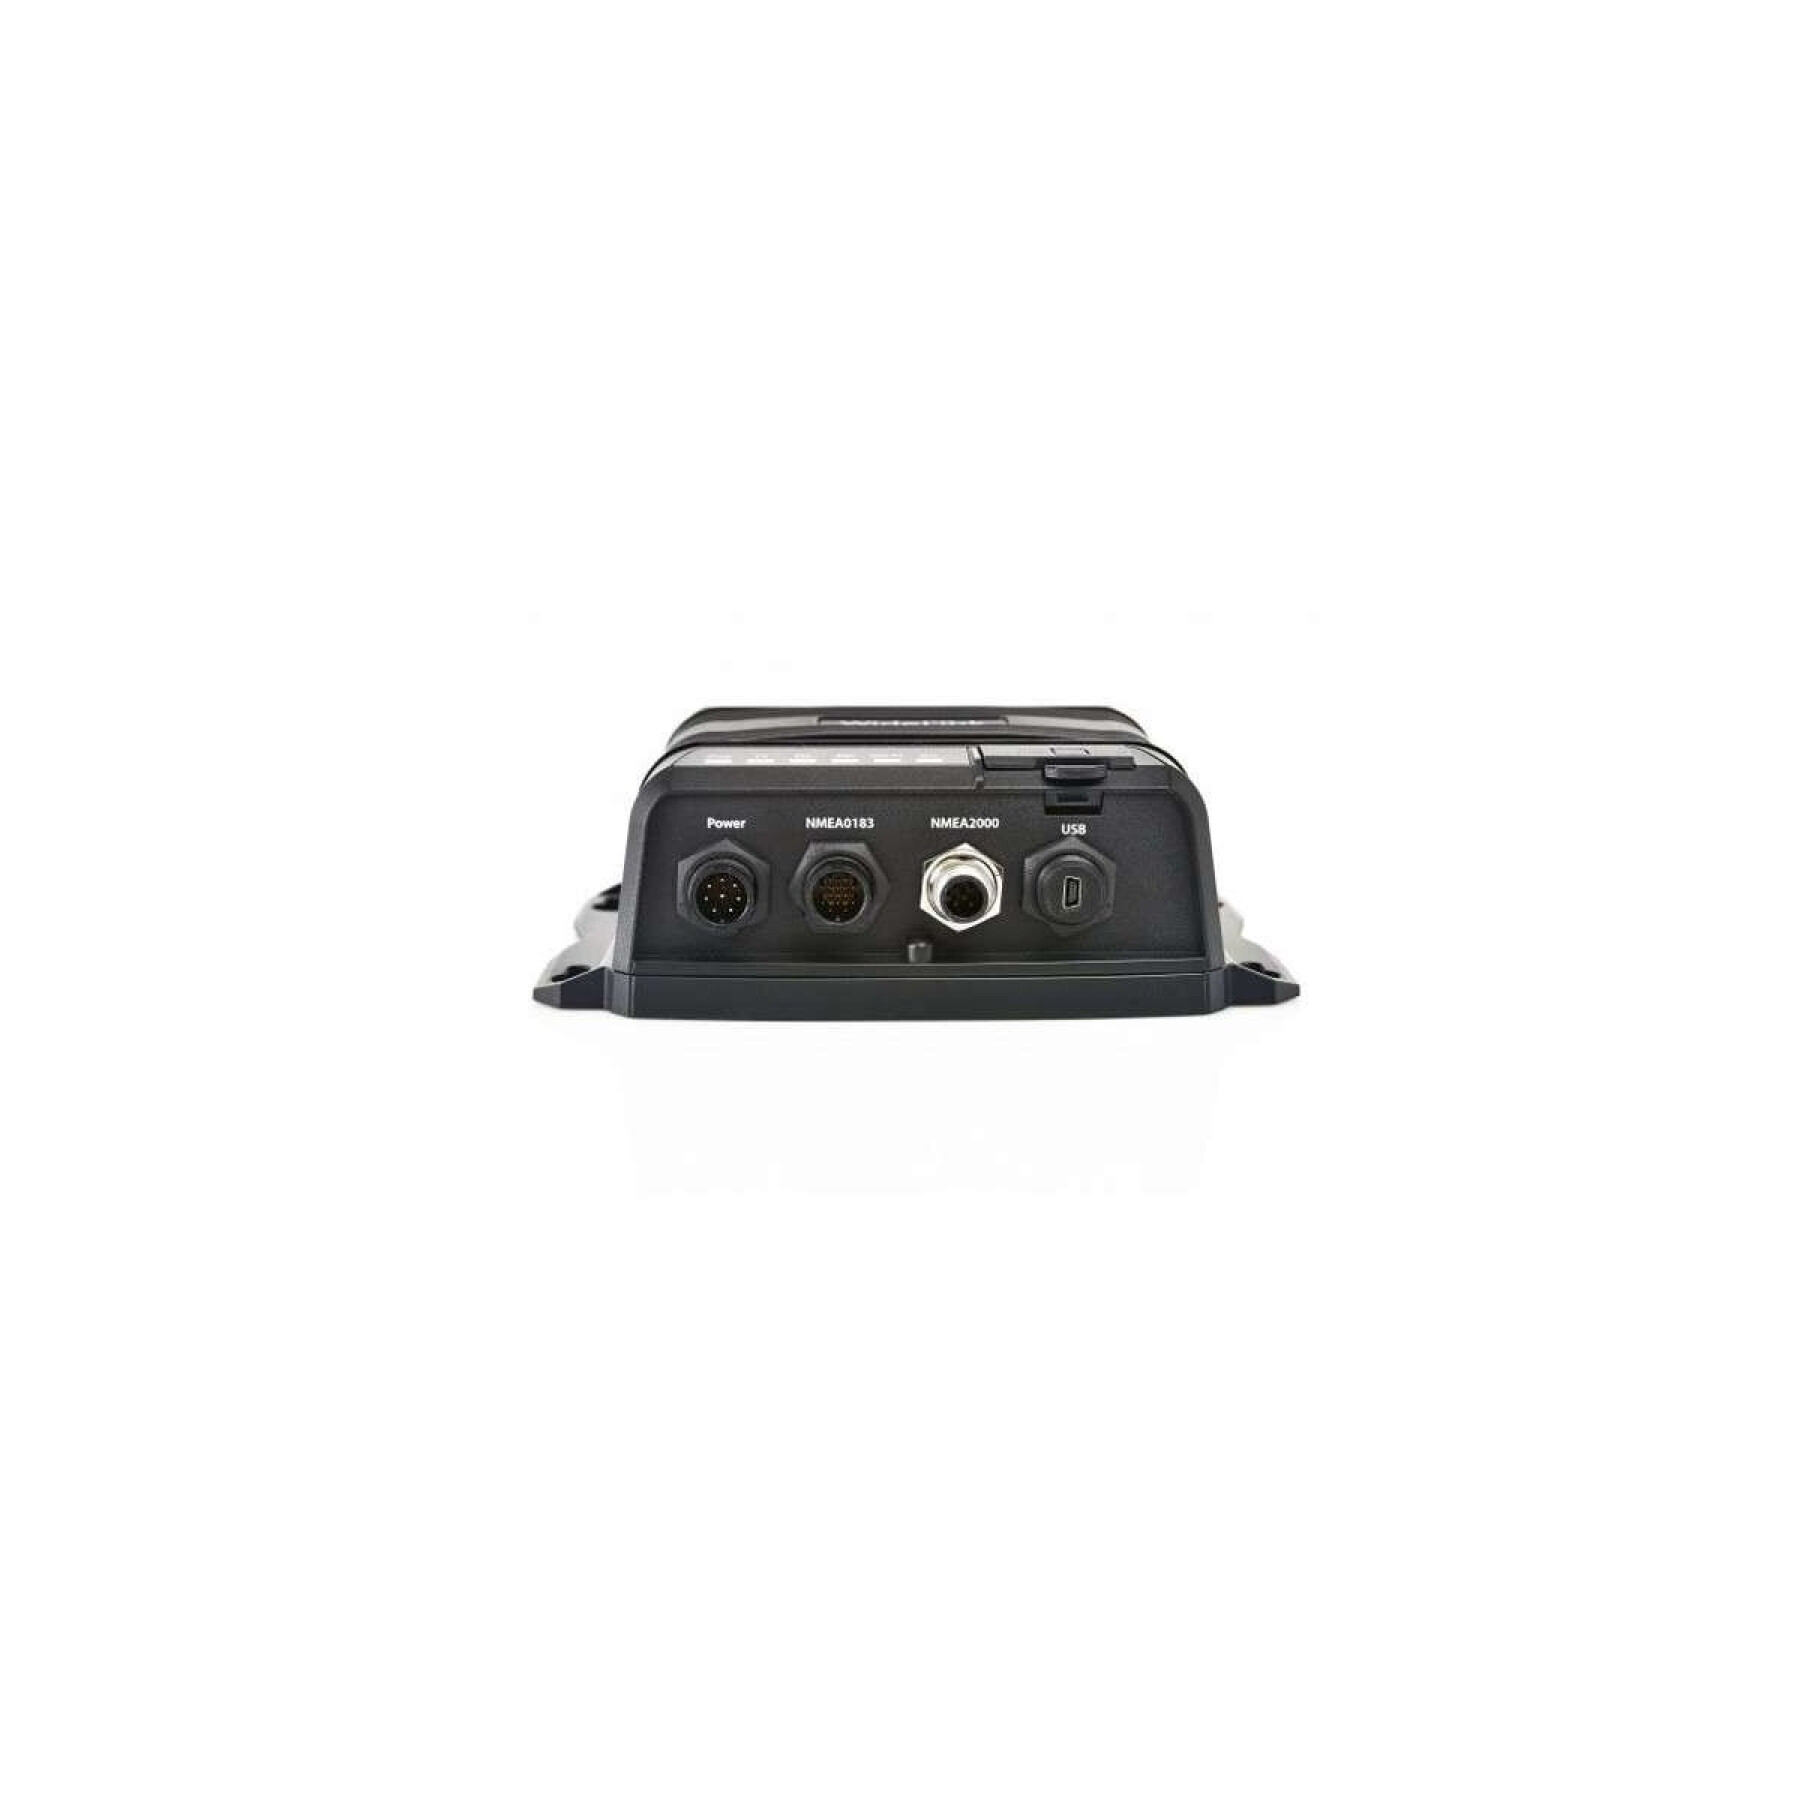 Transpondeur M.C Marine B600 :AIS 5 W SOTDMA classe B USB-NMEA0183-N2K